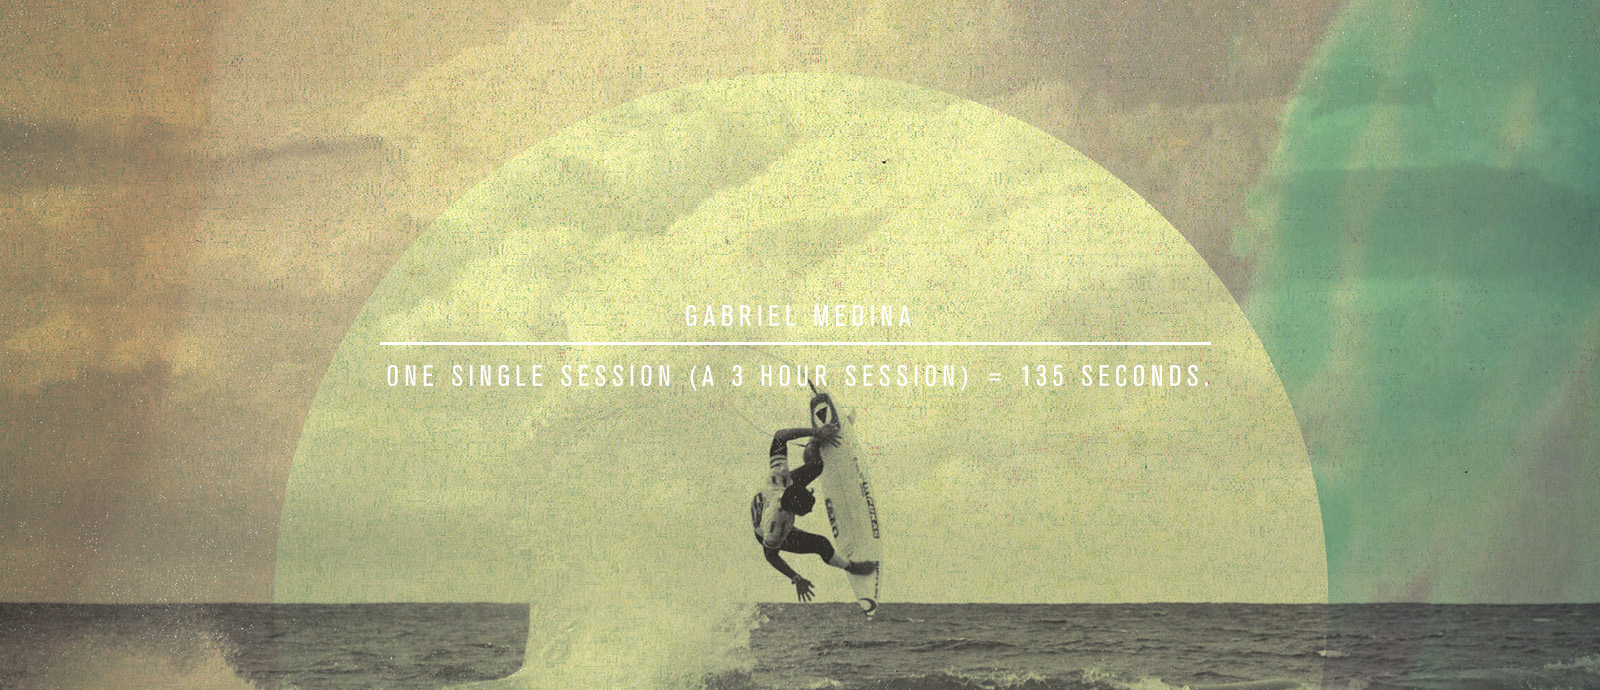 Pukas Surf Gabriel Medina 135 seconds 2014_06_23 02